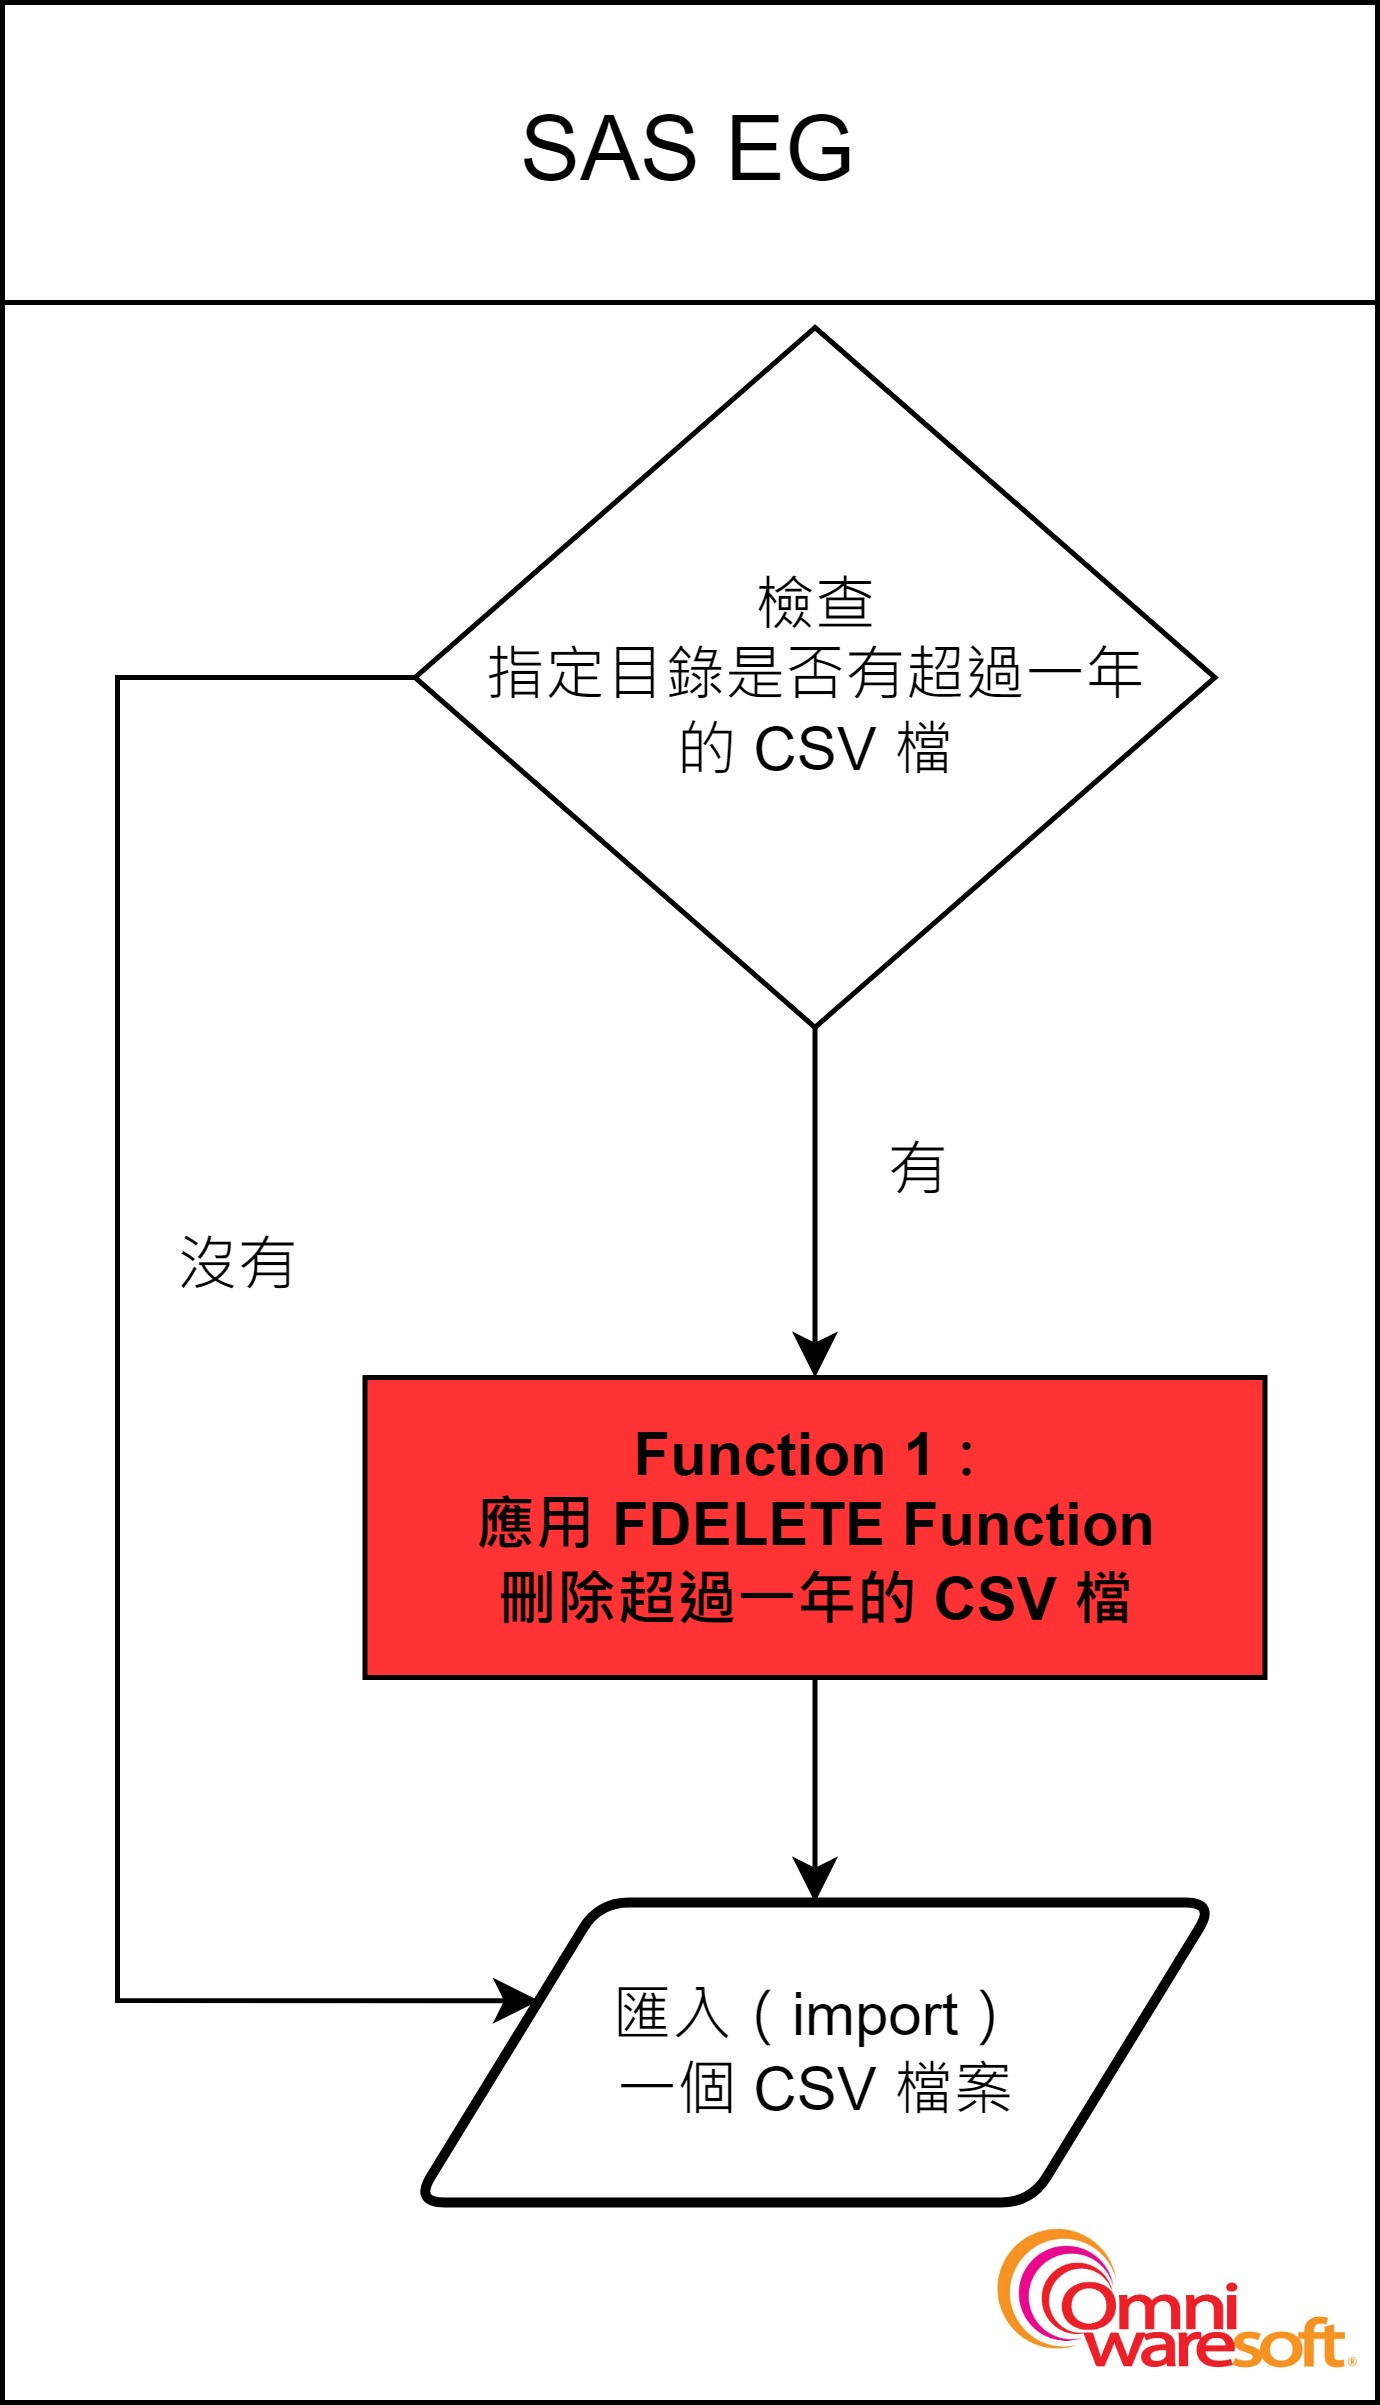 SAS Delete flow chart - Function 1